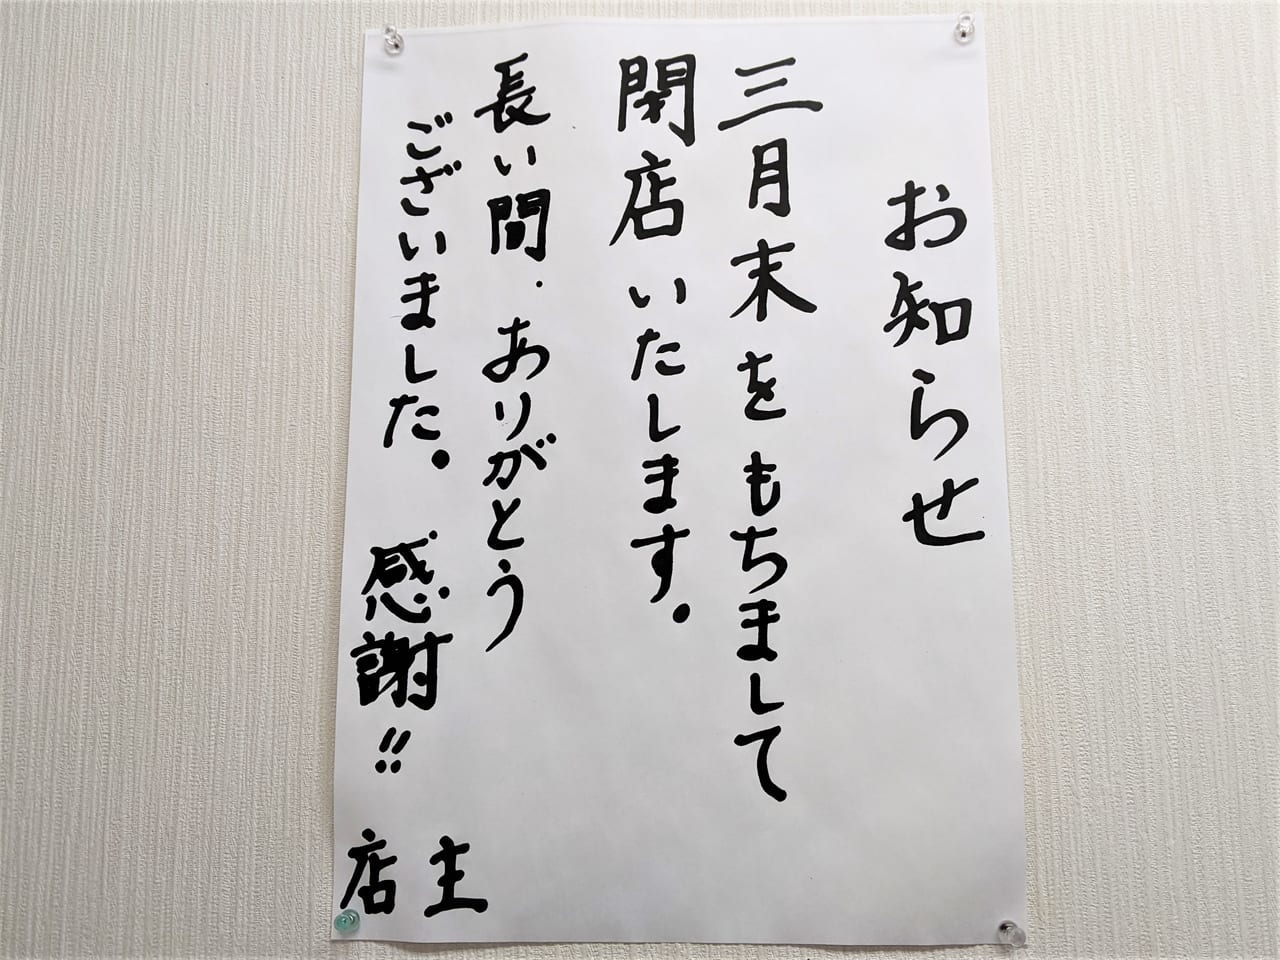 「博多一番 津島店」の閉店のお知らせ